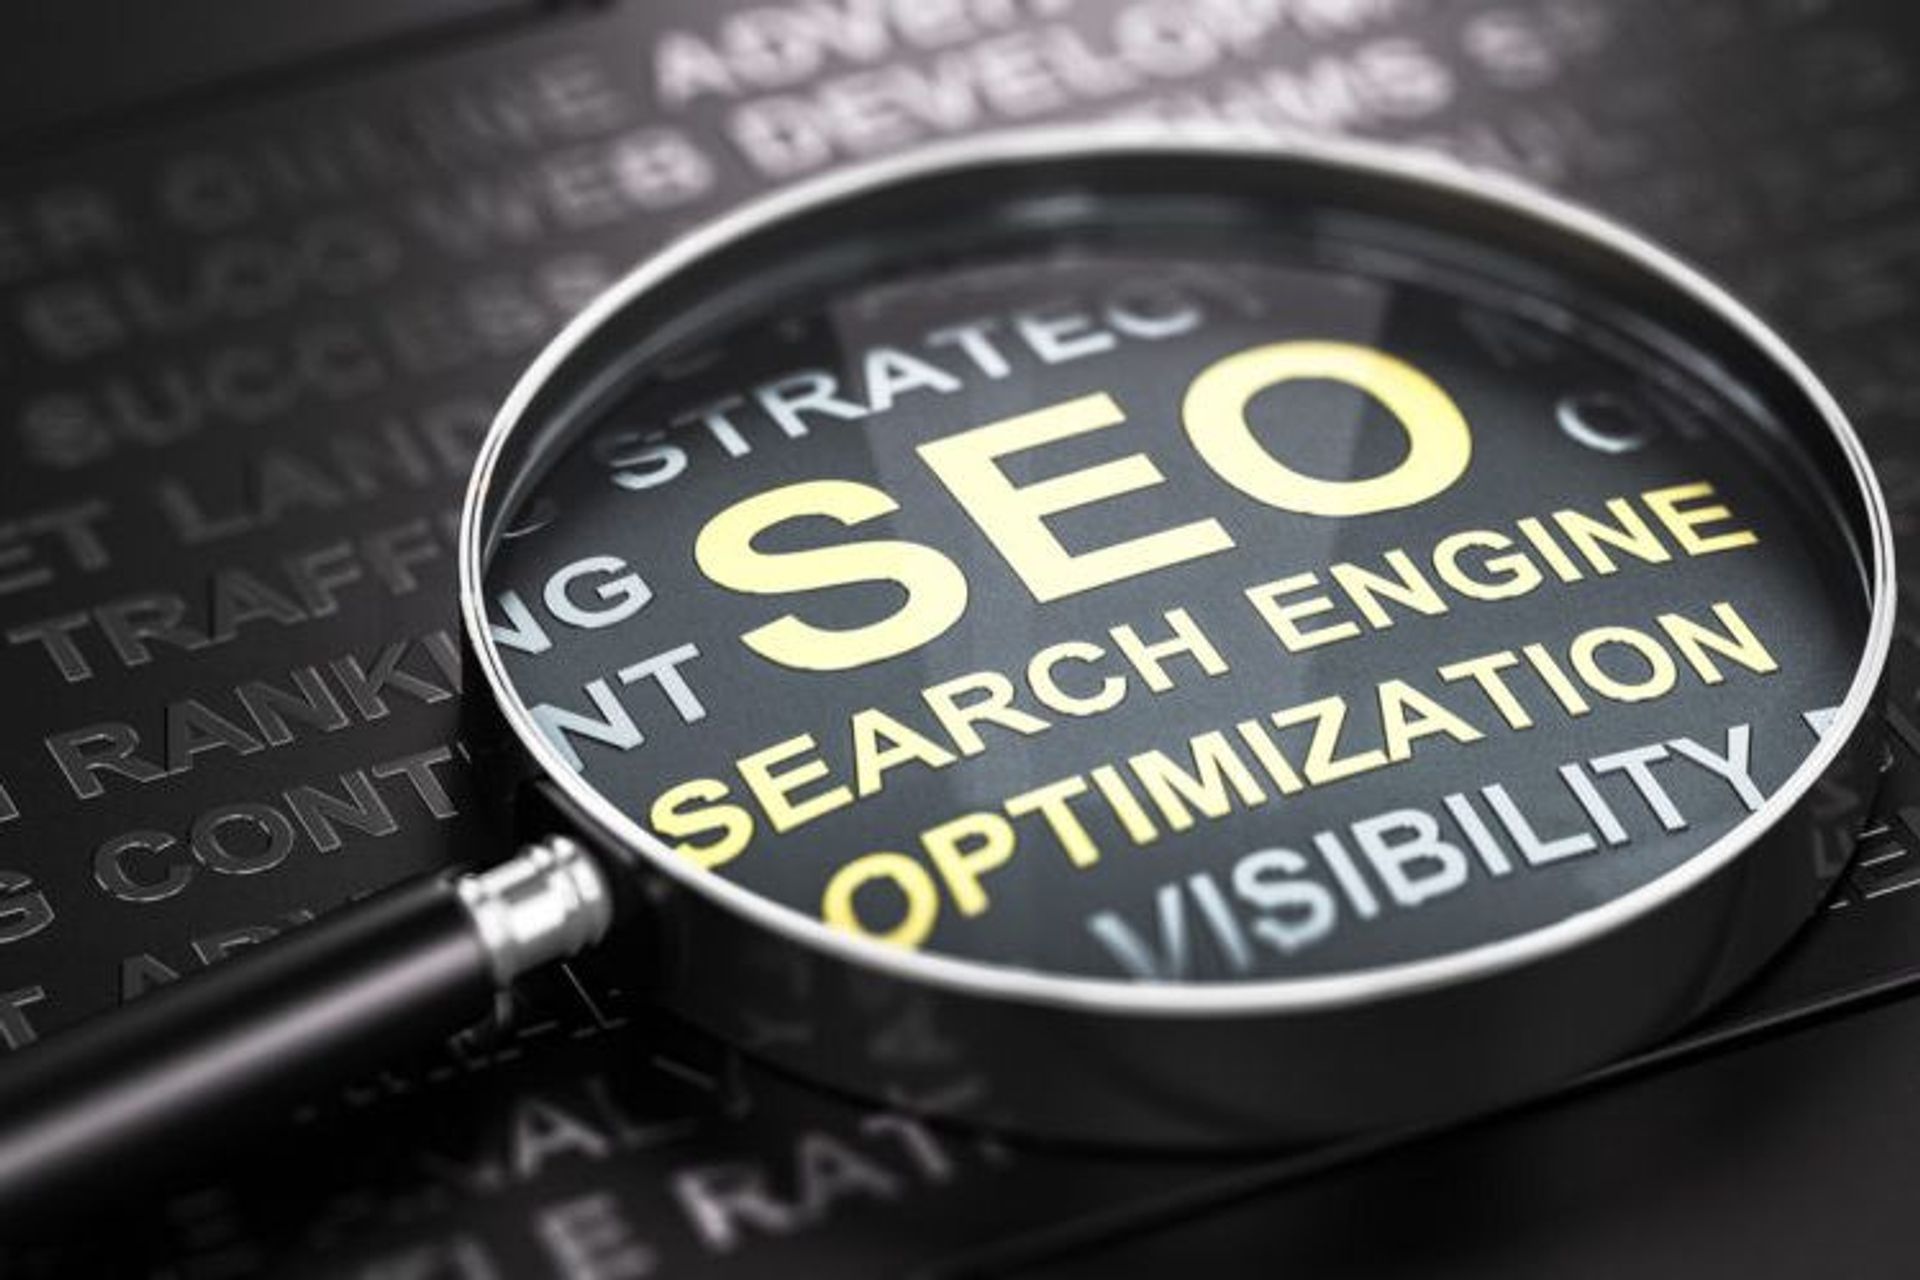 Pojam "optimizacija za pretraživače" (na engleskom "Search Engine Optimization", u skraćenici SEO) označava sve one aktivnosti koje imaju za cilj poboljšanje skeniranja, indeksiranja i pozicioniranja informacija ili sadržaja prisutnih na web stranici.